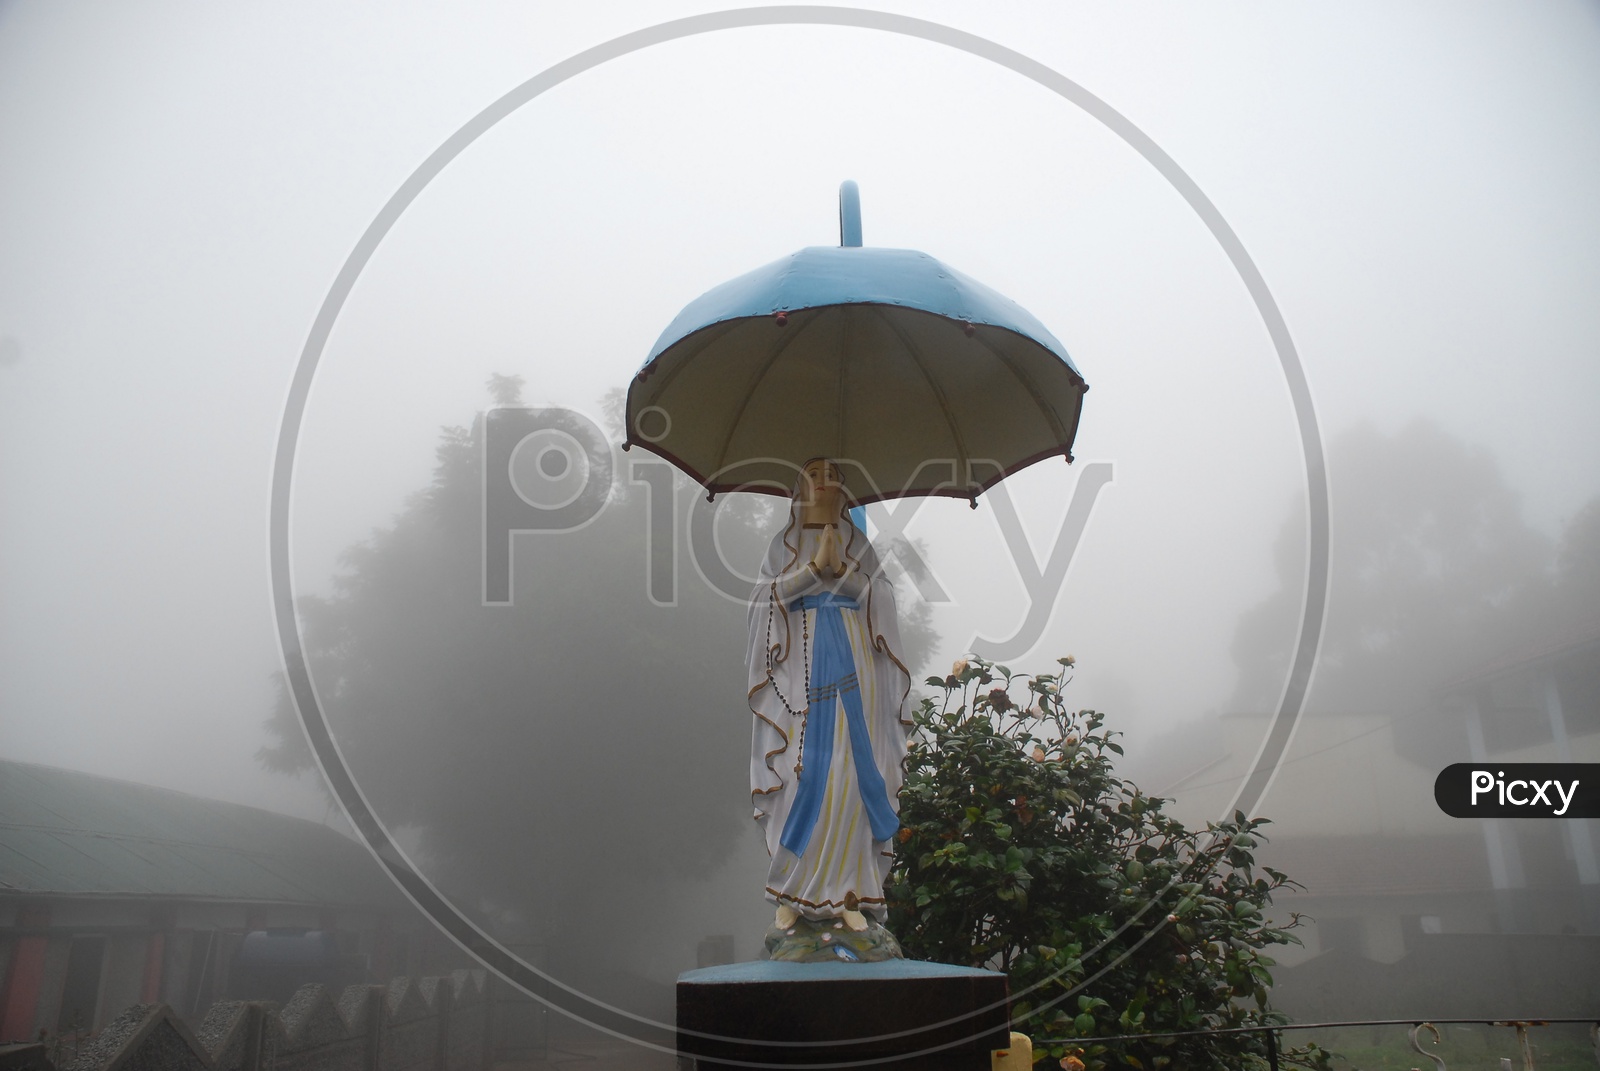 Jesus statue during fog